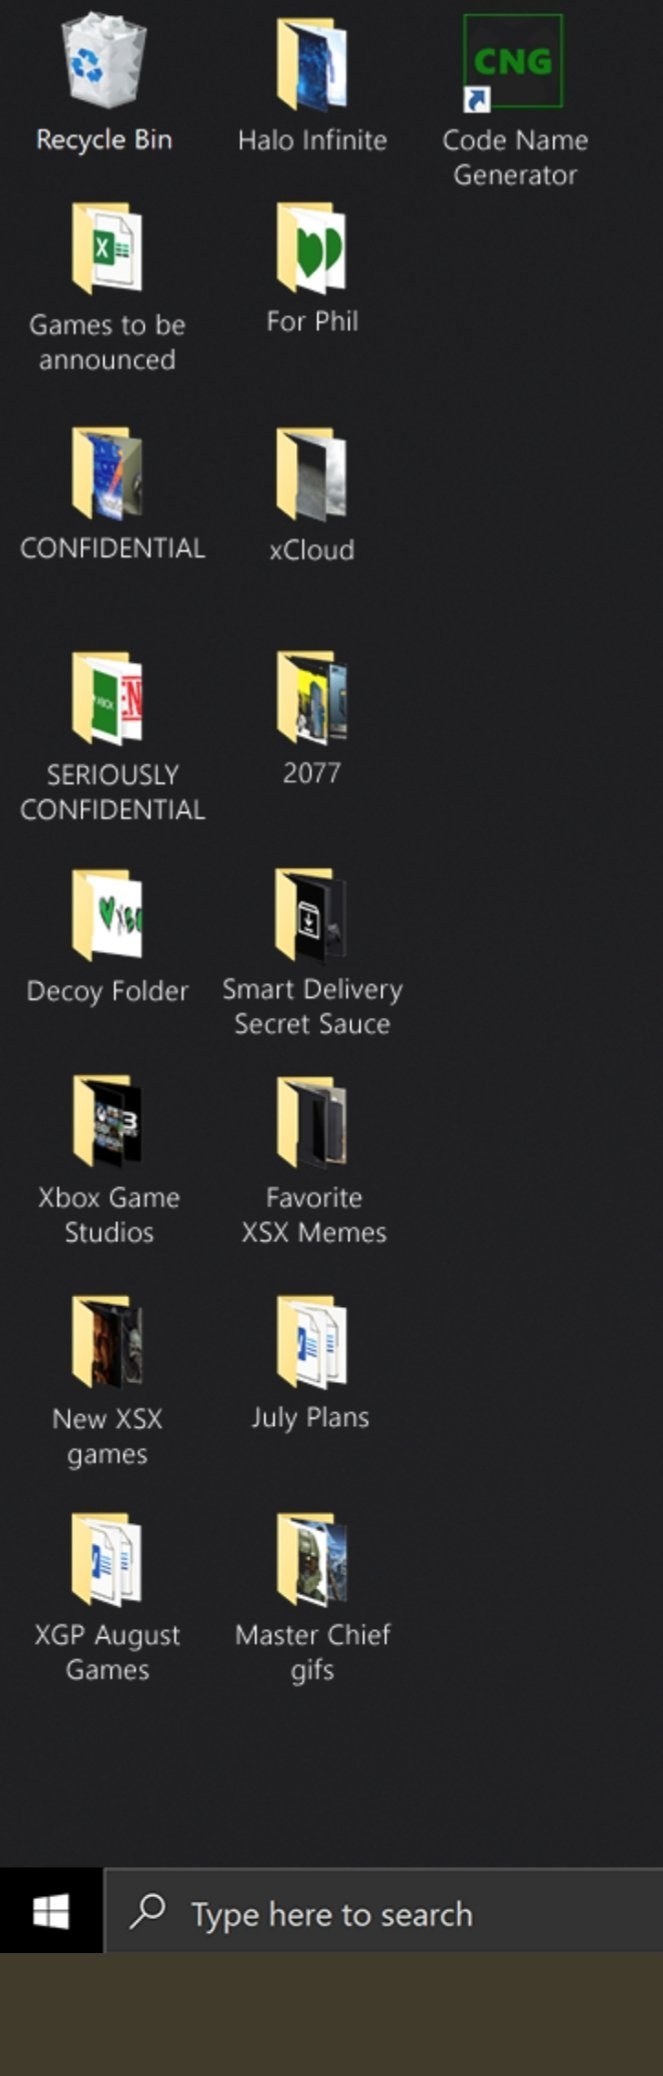 微软为win10推出免费Xbox Series X主题